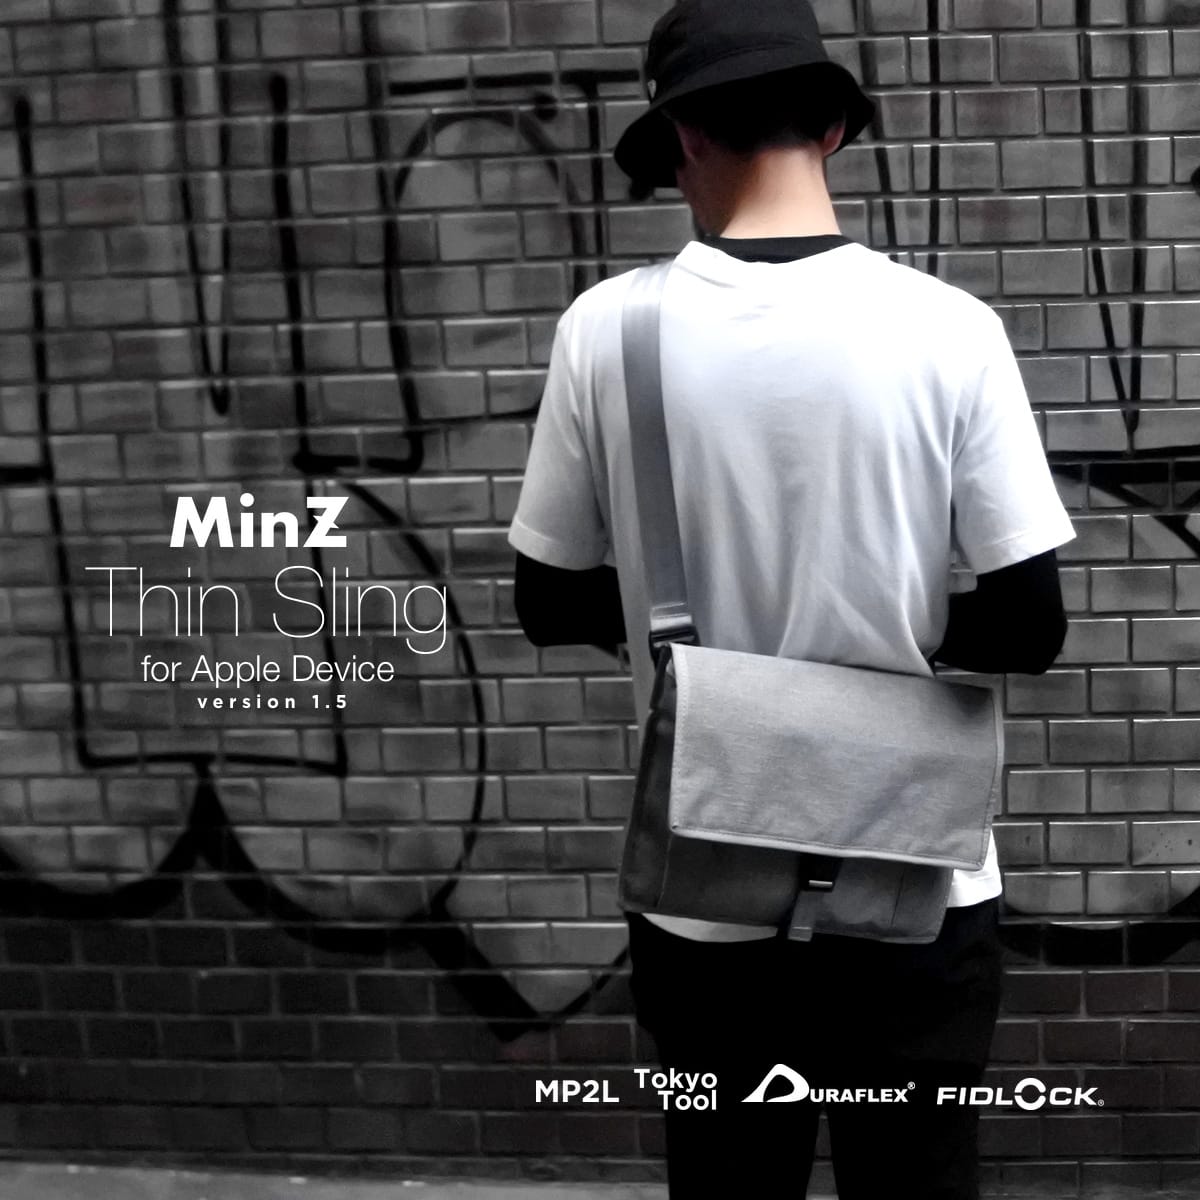 14インチMacBook Proも収納できるスリムスリングバッグ「MinZ Thin Sling Ver.1.5」